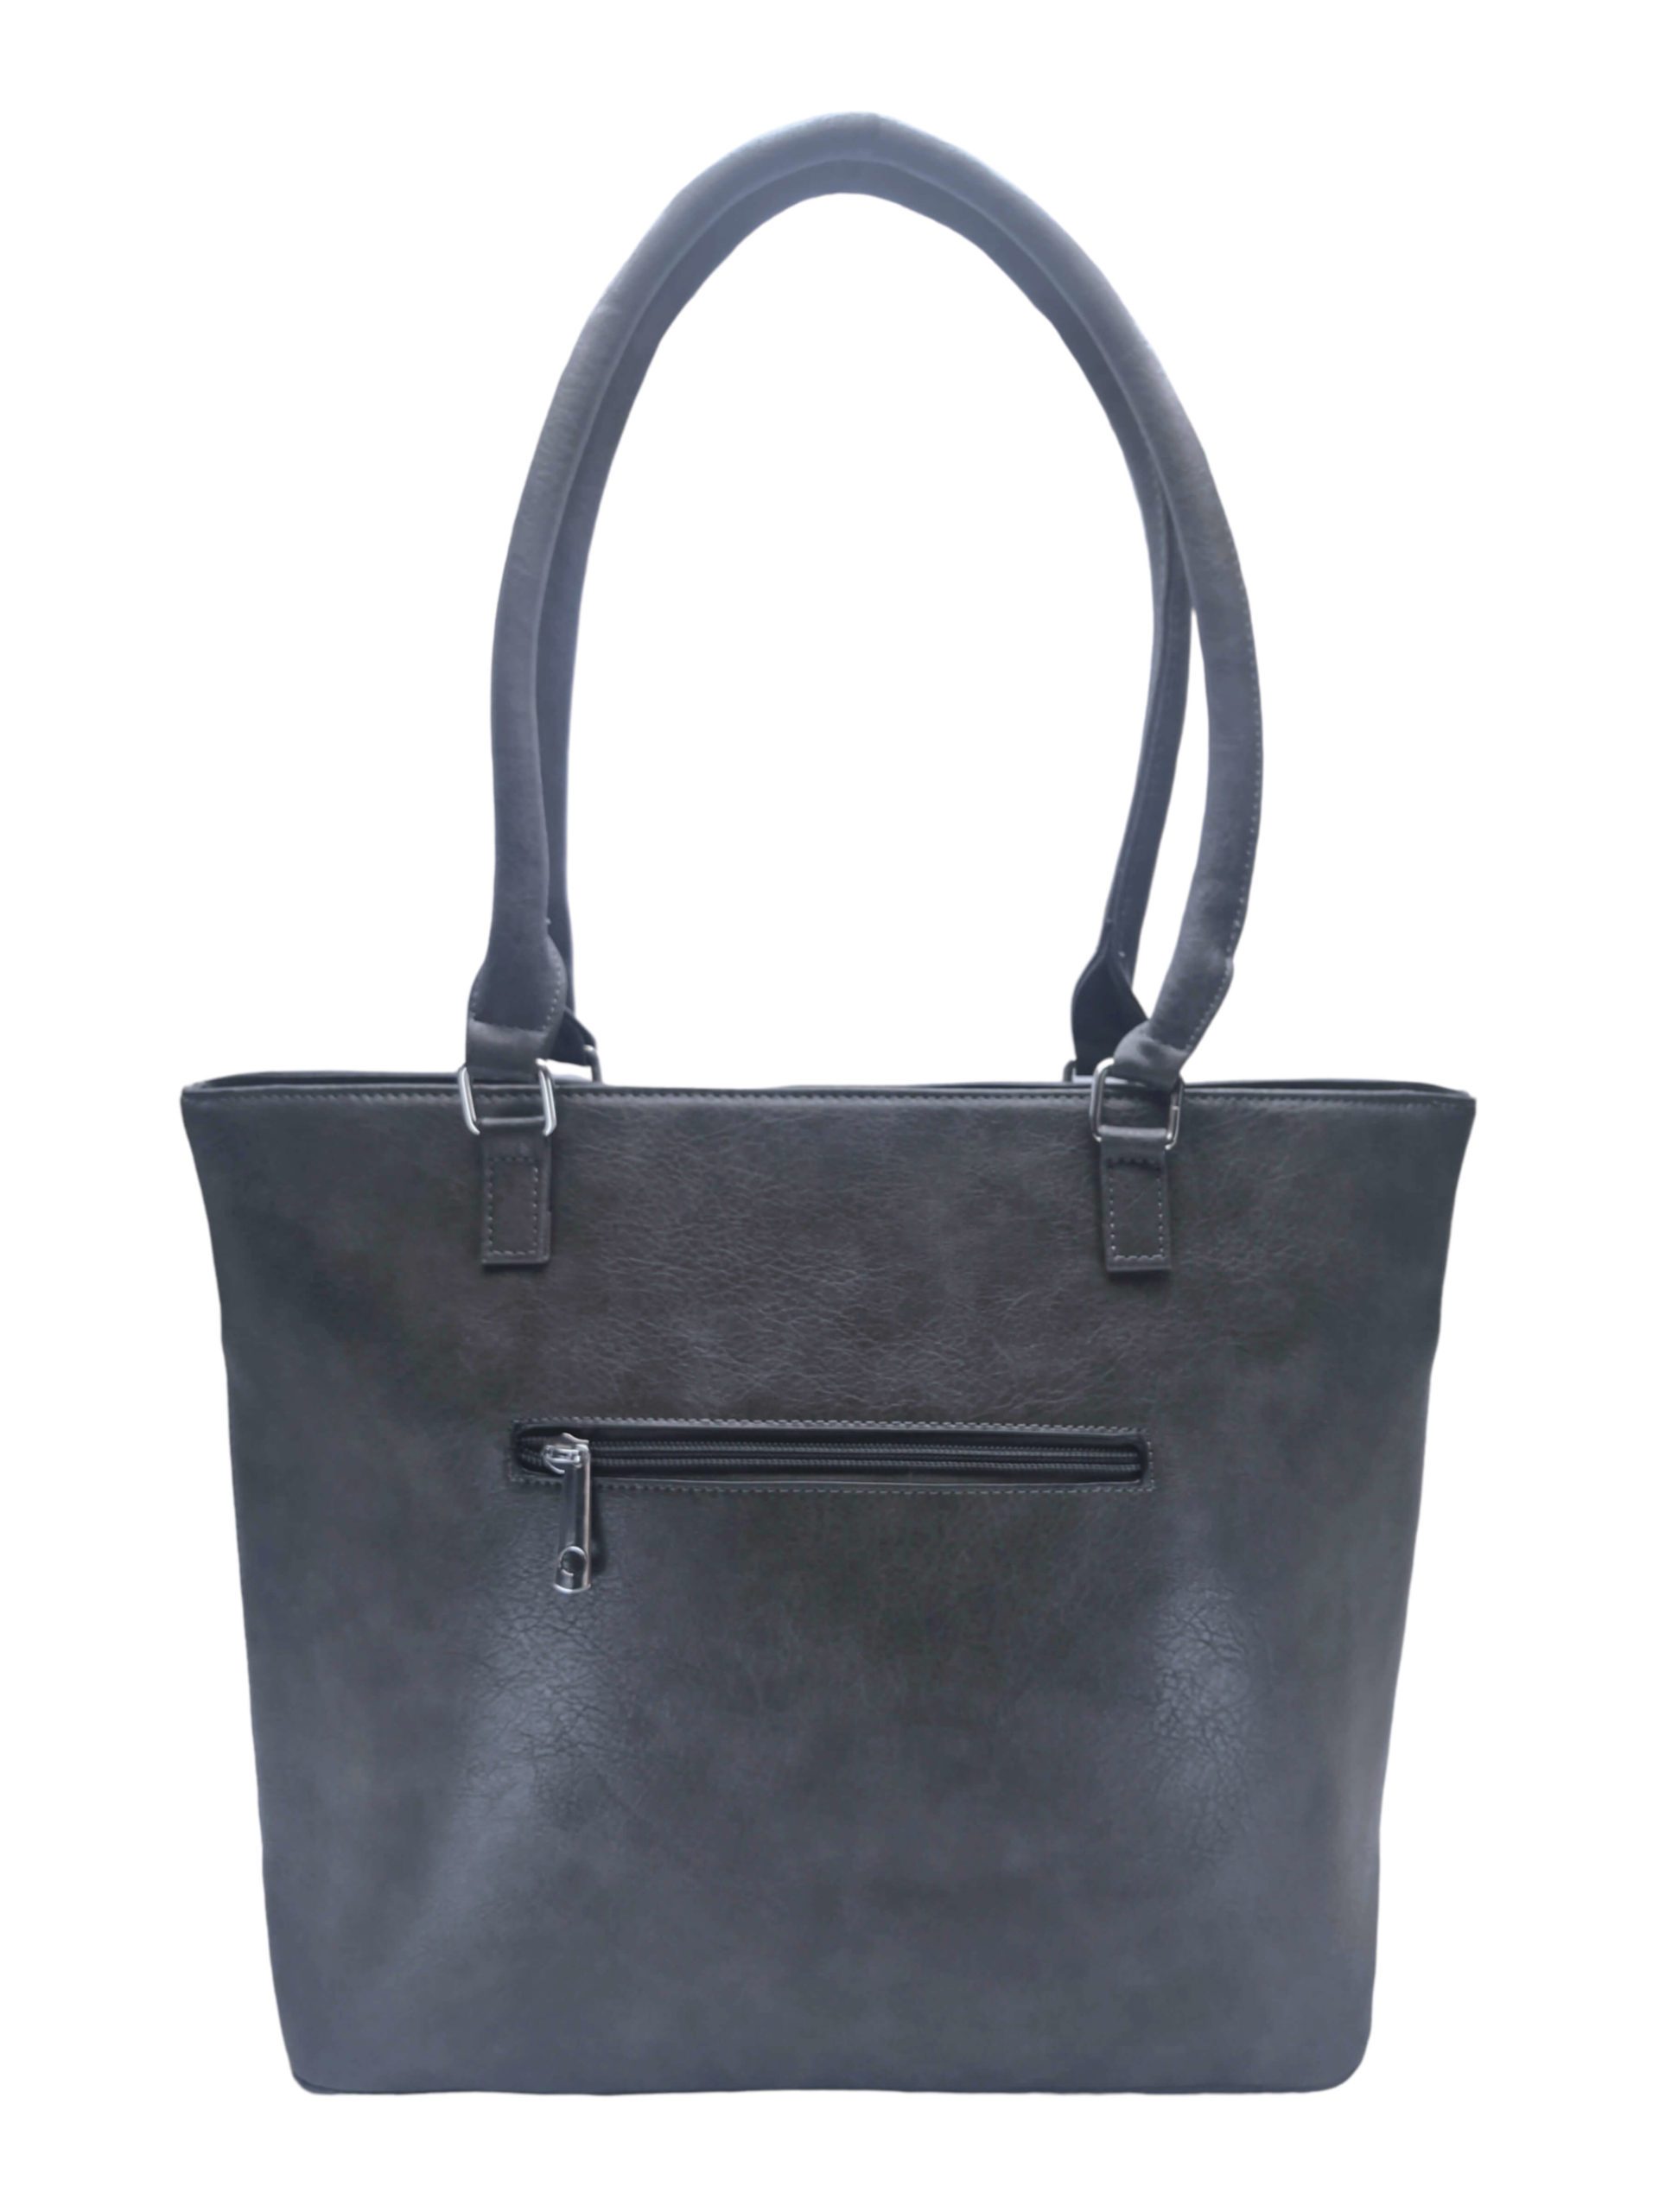 Dámská kabelka přes rameno s moderními vzory, Tapple H190027, tmavě šedá, zadní strana kabelky